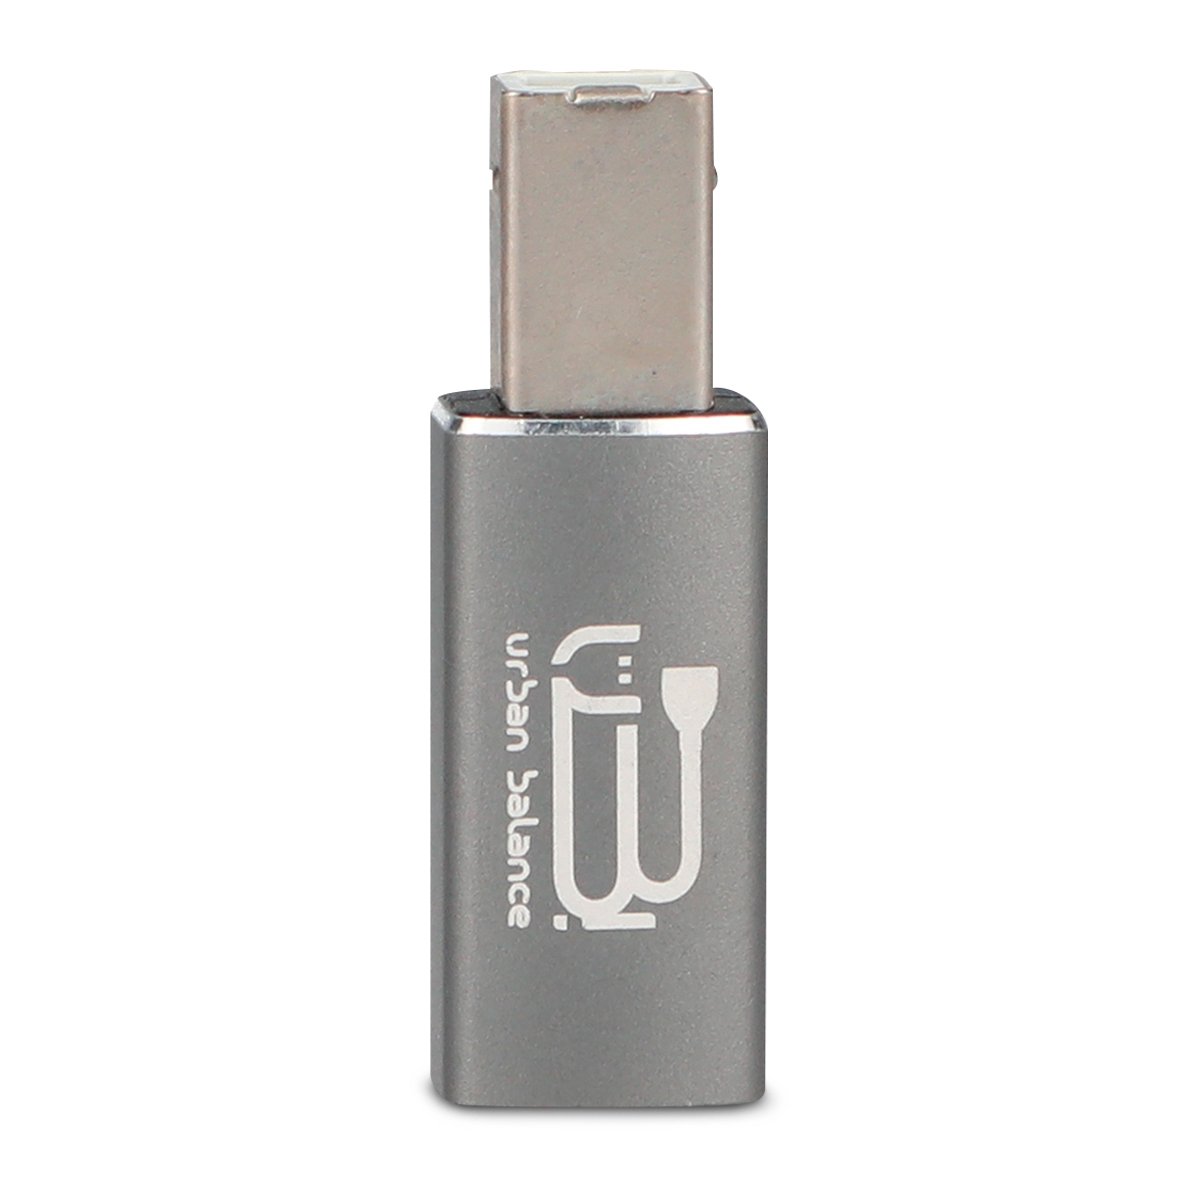 Adaptador USB C a USB B Recto DBugg